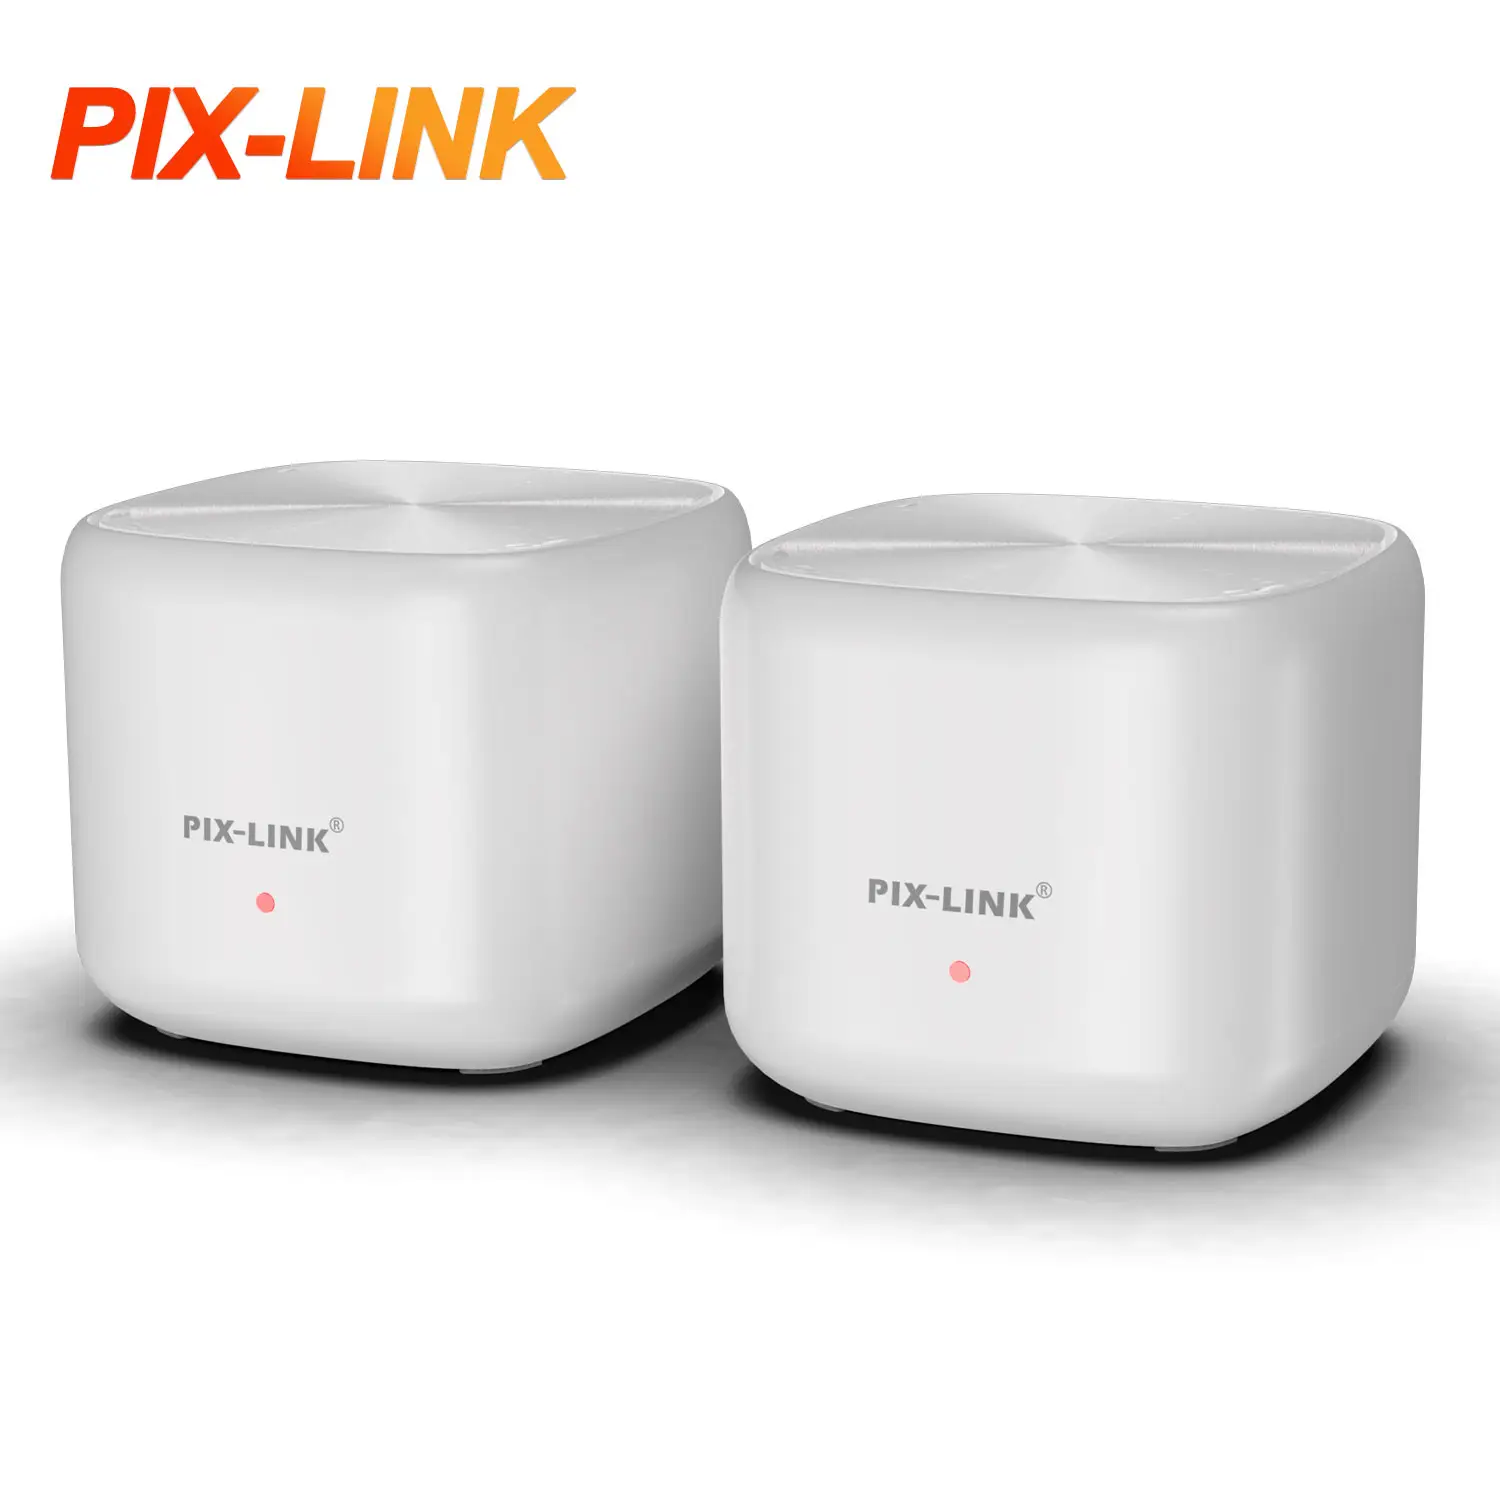 PIX-LINK Ax1800m Système Wi-fi Routeur Wifi 6 Mesh pour Smart Home (Lot de 2) 10 1 an/12 mois 2.4G & 5G 1 Ac 1200 Routeur 100mbps